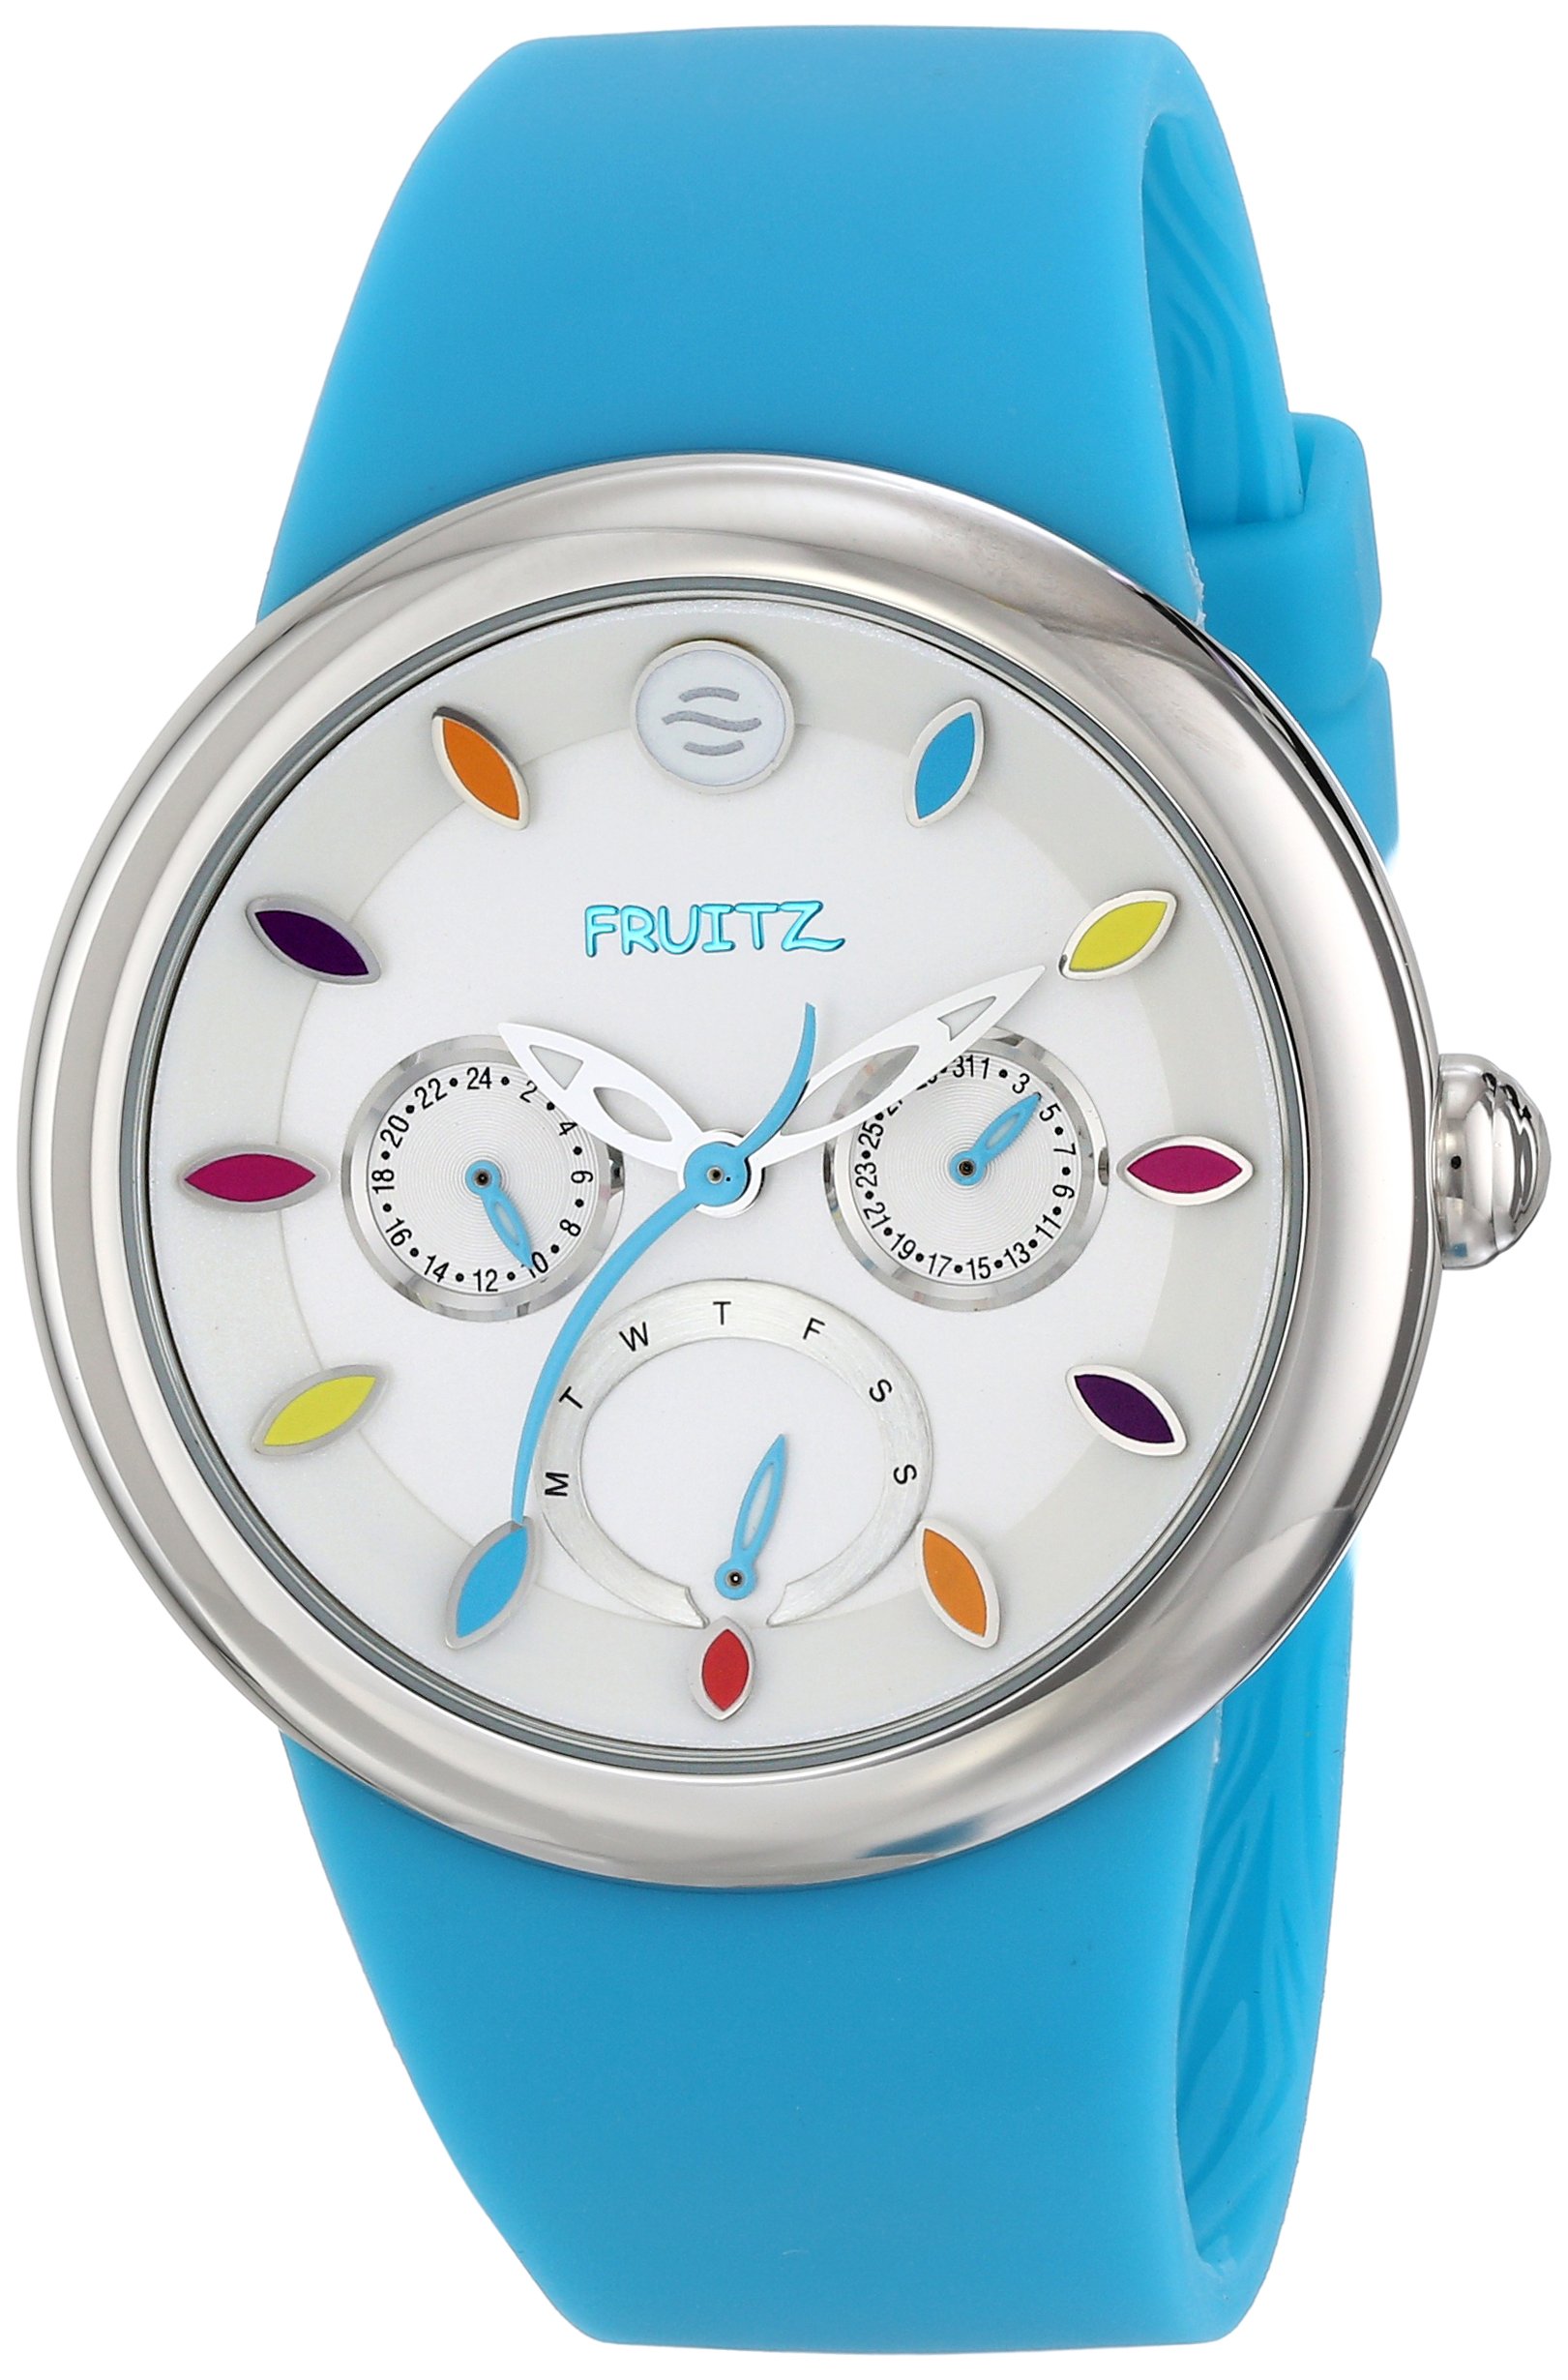 Fruitz by Philip Stein Unisex F43S-TF-TQ Analog Display Japanese Quartz Blue Watch